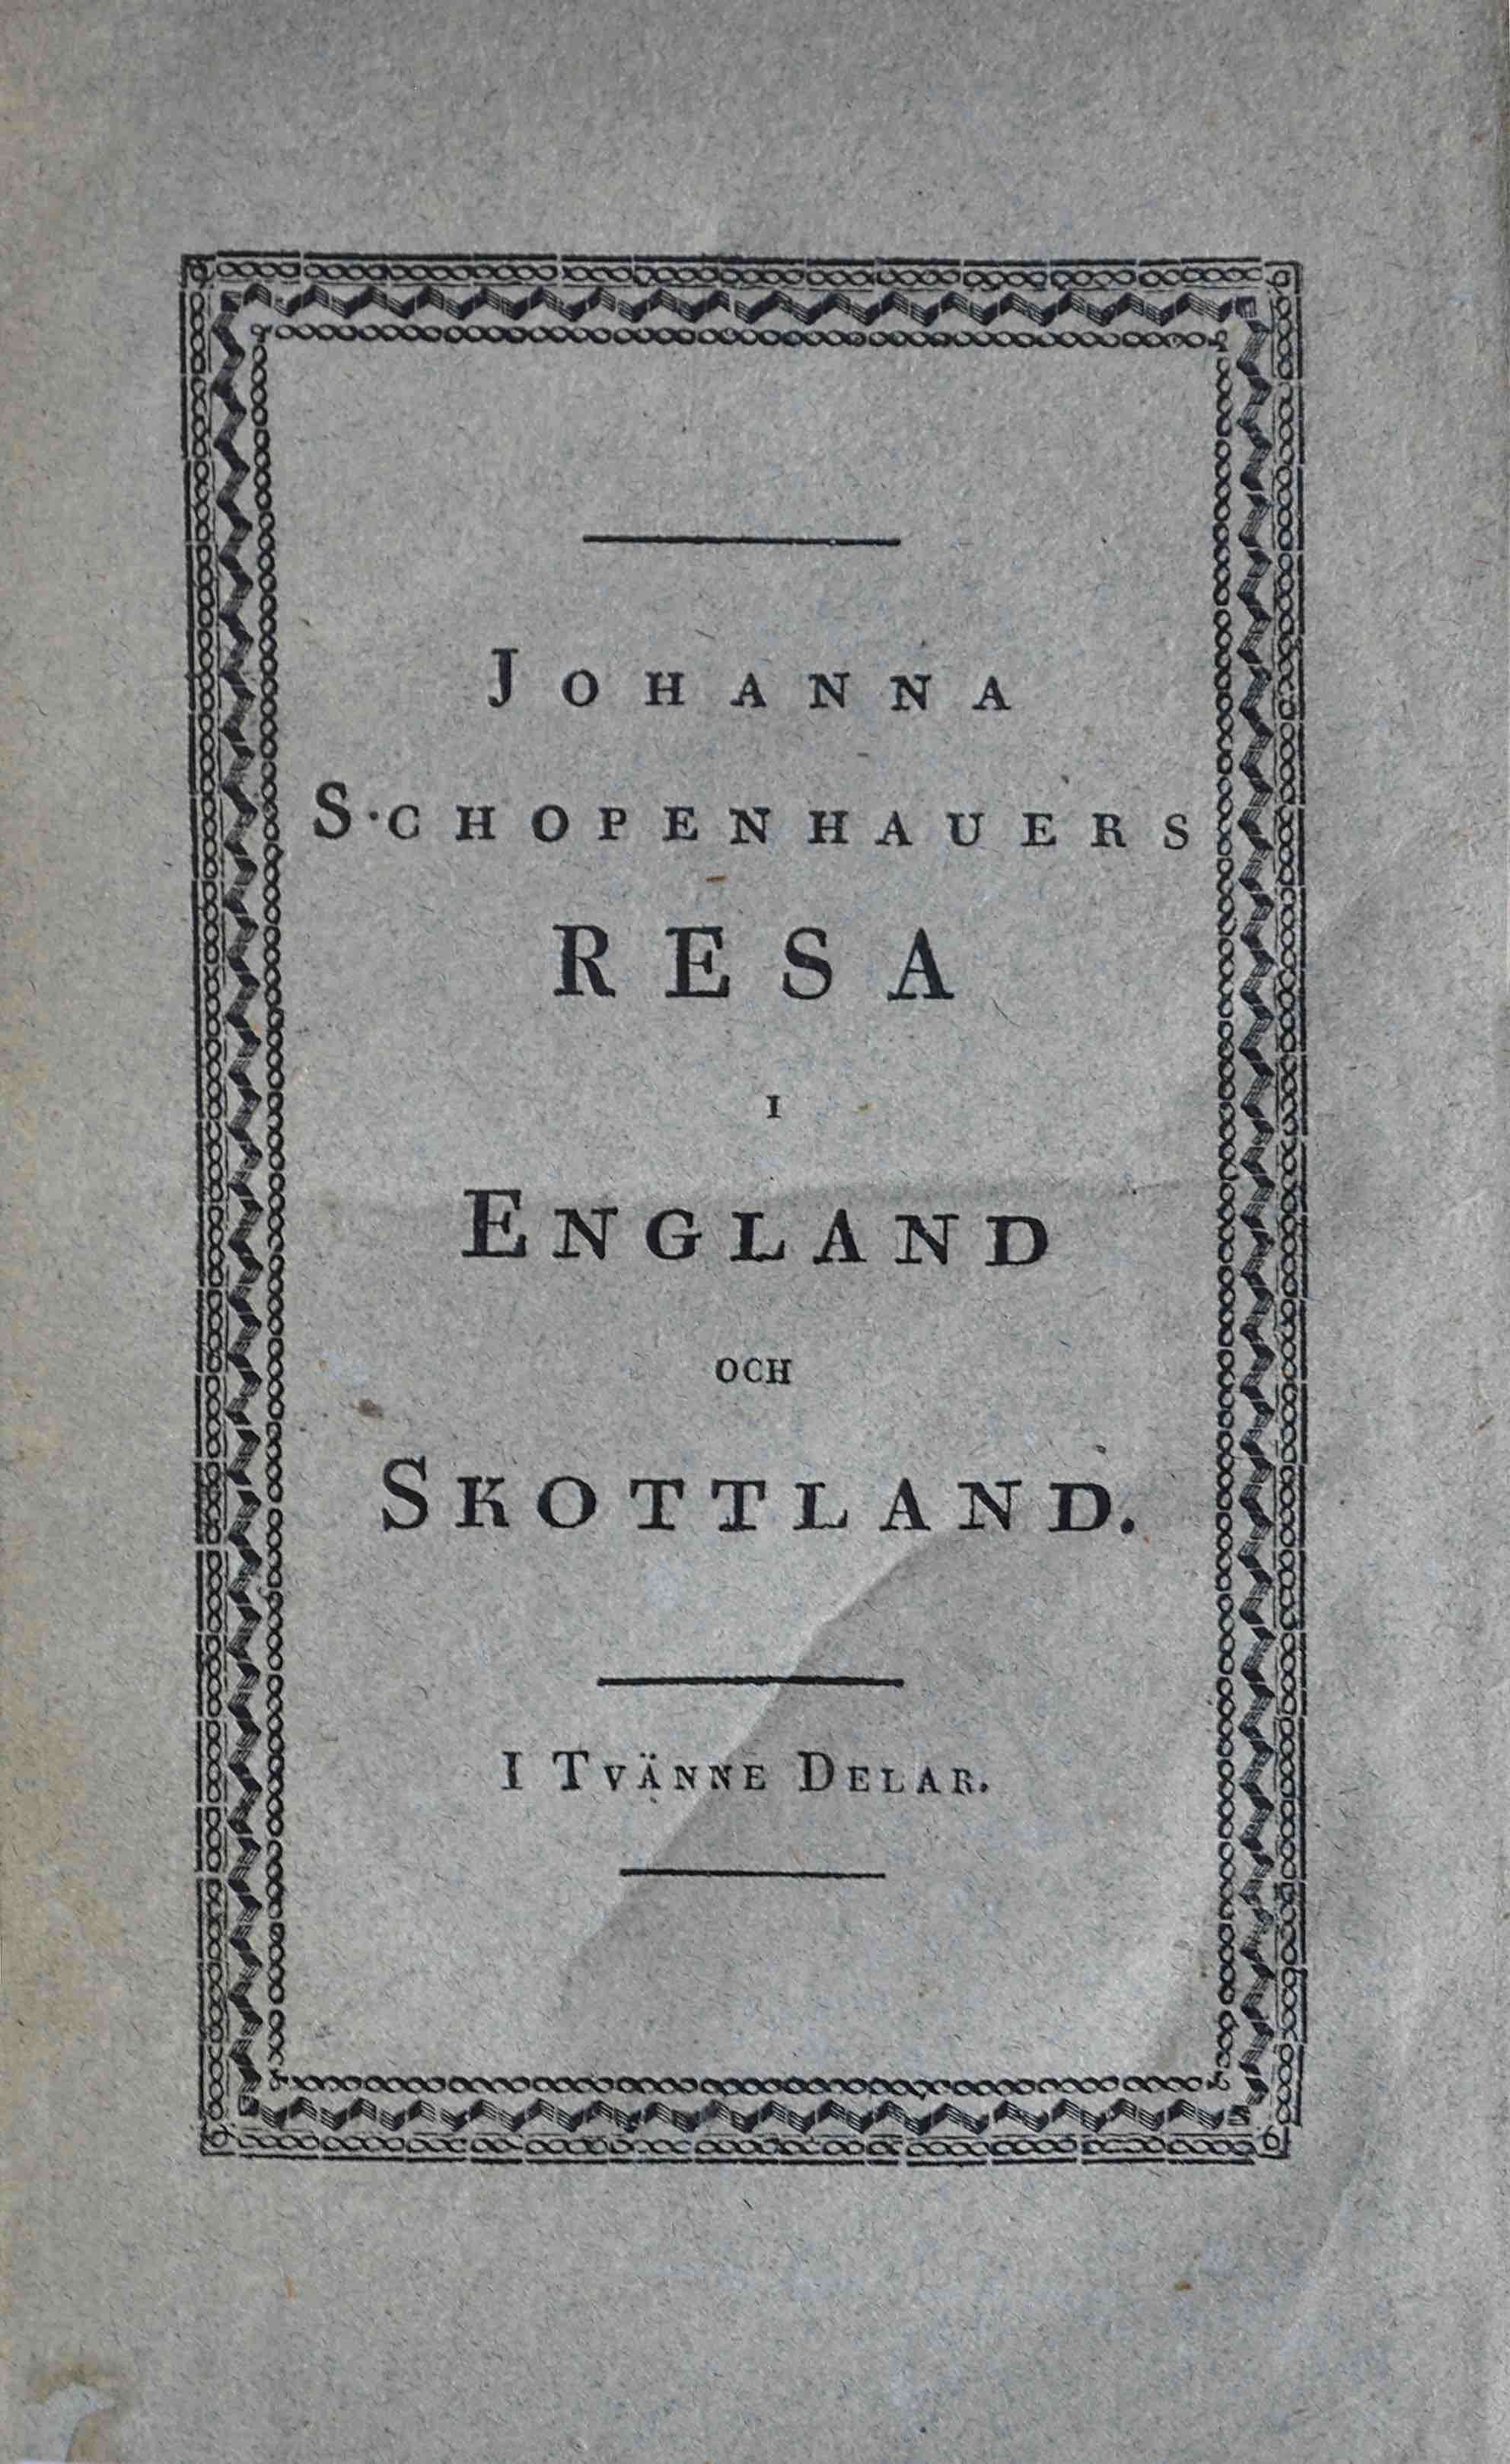 SCHOPENHAUER, JOHANNA HENRIETTE: - Resa i England och Skottland. Two parts in one volume. Stockholm, Zacharias Hggstrm, 1827.